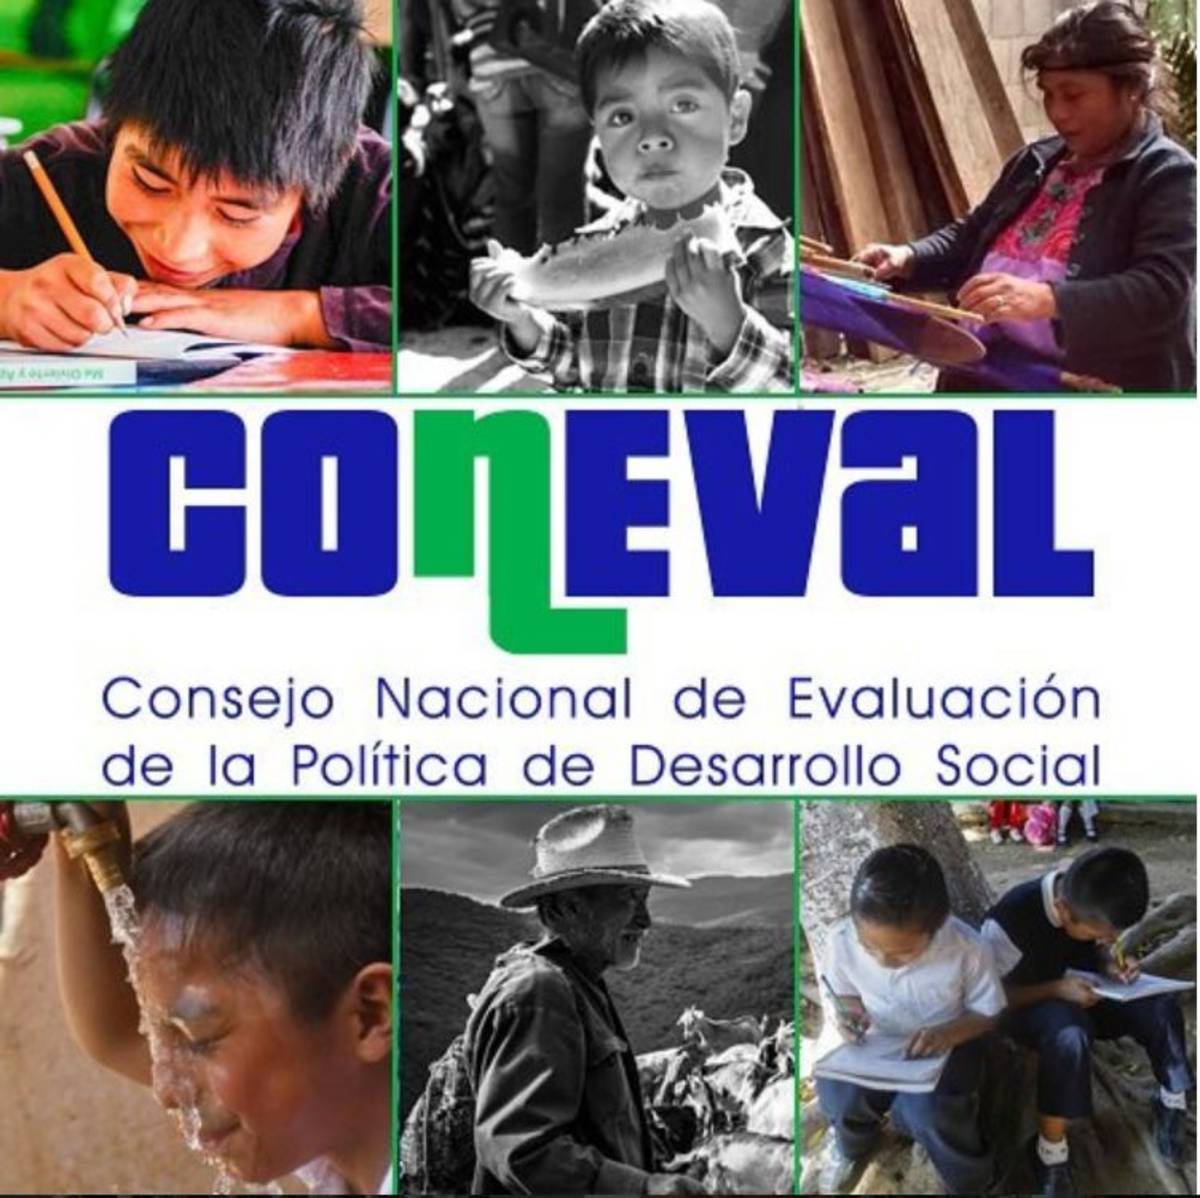 La pandemia de coronavirus provocó el aumento en 3.8 millones de mexicanos en situación de pobreza y 2.1 millones de personas en pobreza extrema en los dos primeros años de este gobierno, de acuerdo al Consejo Nacional de Evaluación de la Política de Desarrollo Social (Coneval)